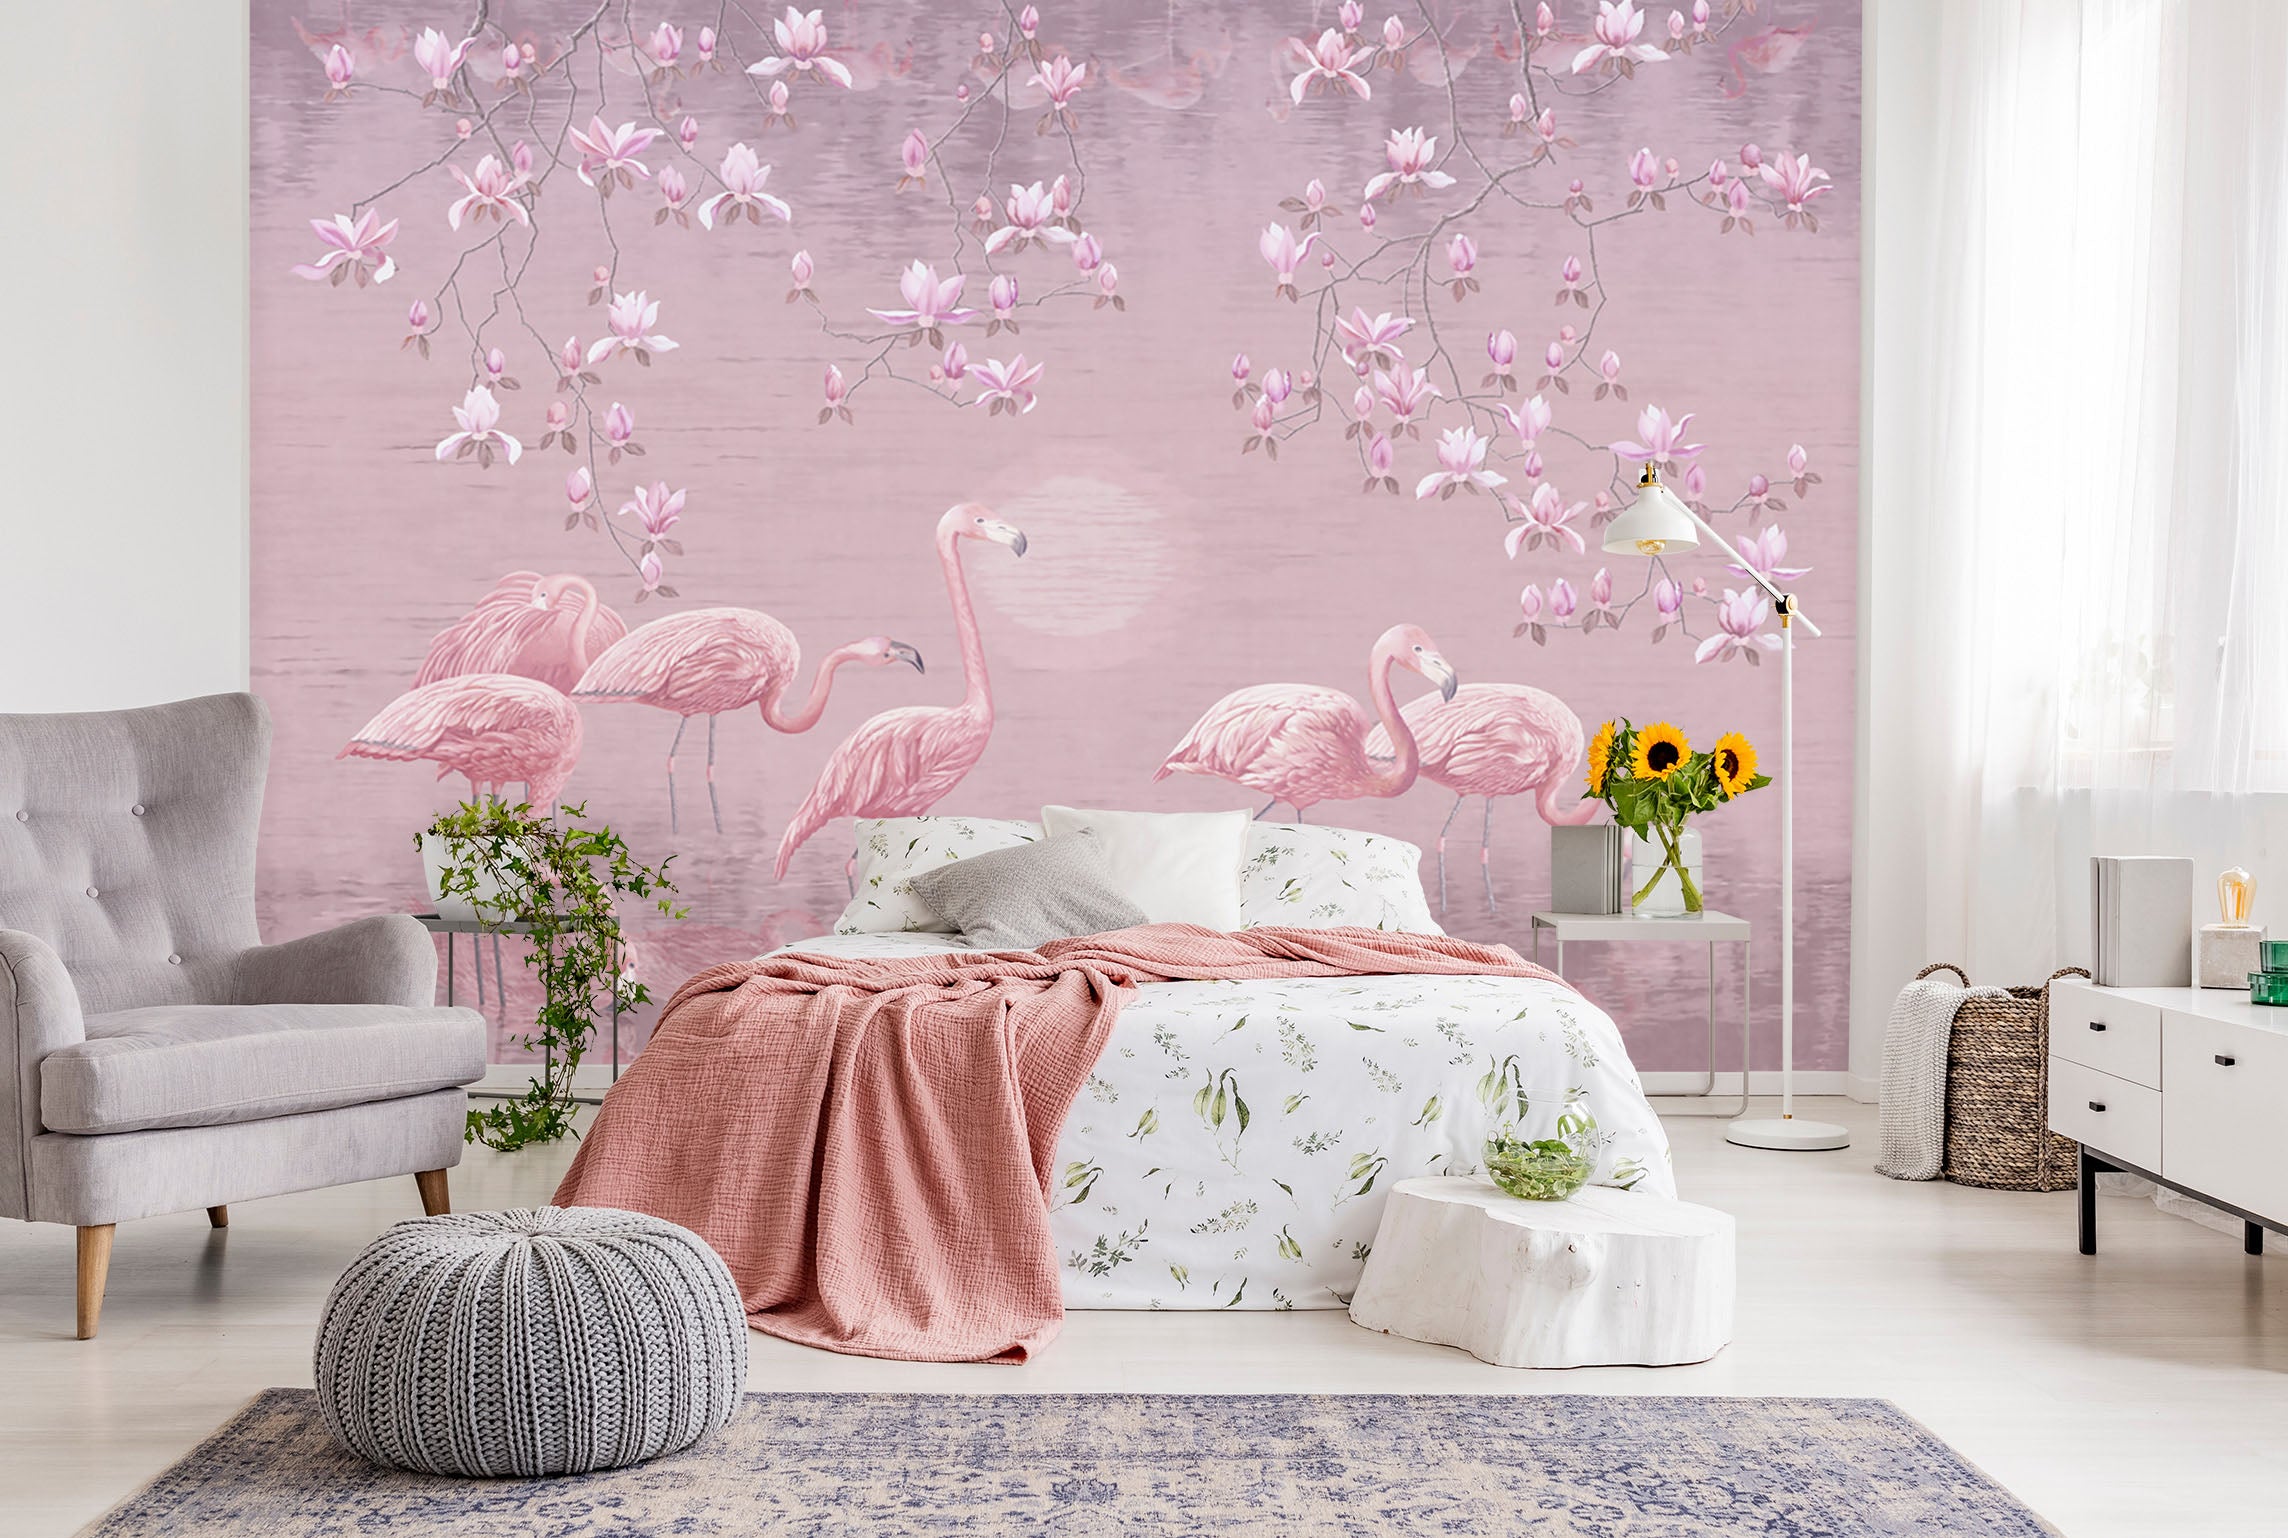 3D Flower Flamingo 1543 Wall Murals